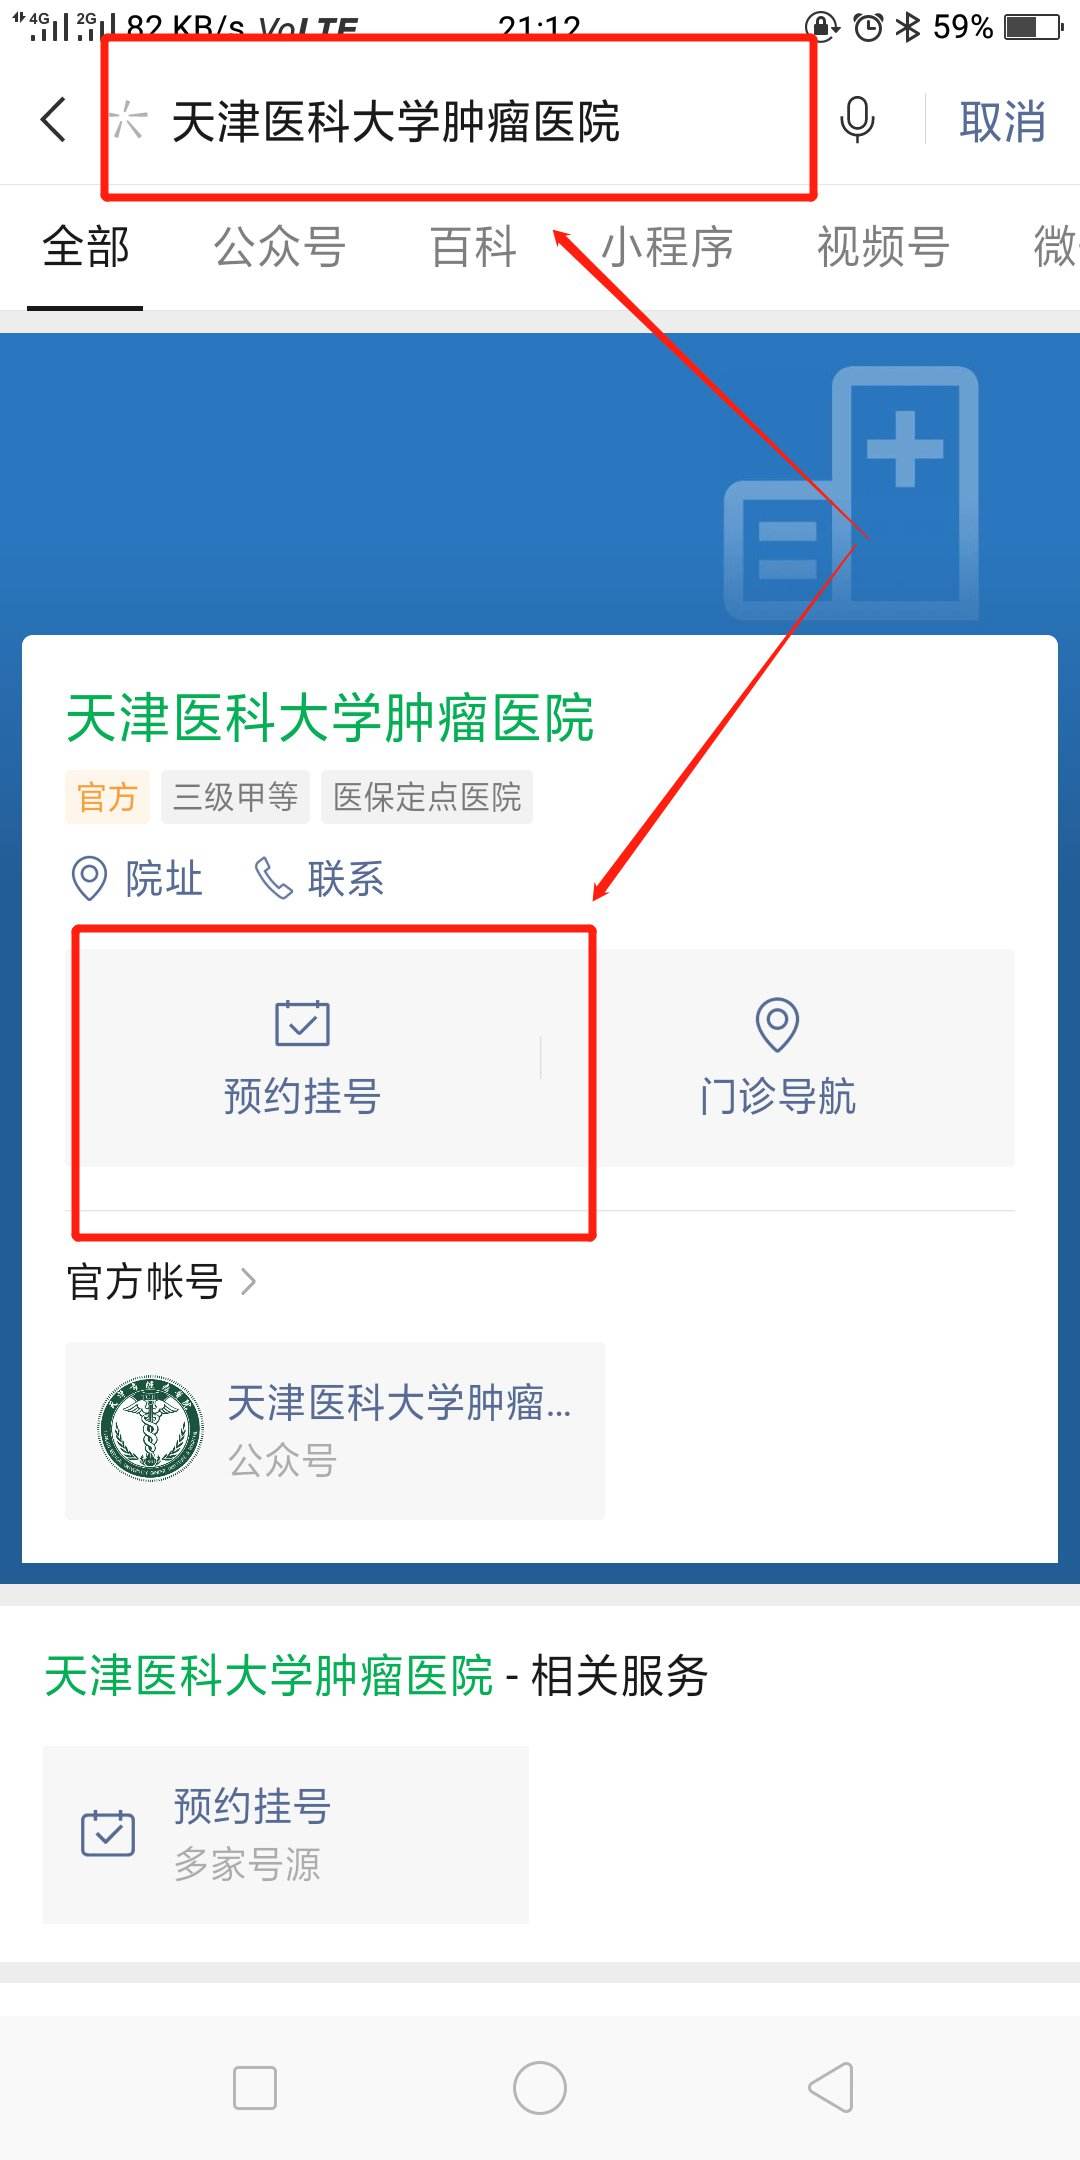 关于北京大学肿瘤医院跑腿代挂号可靠吗,一定能有号只需你联系!的信息